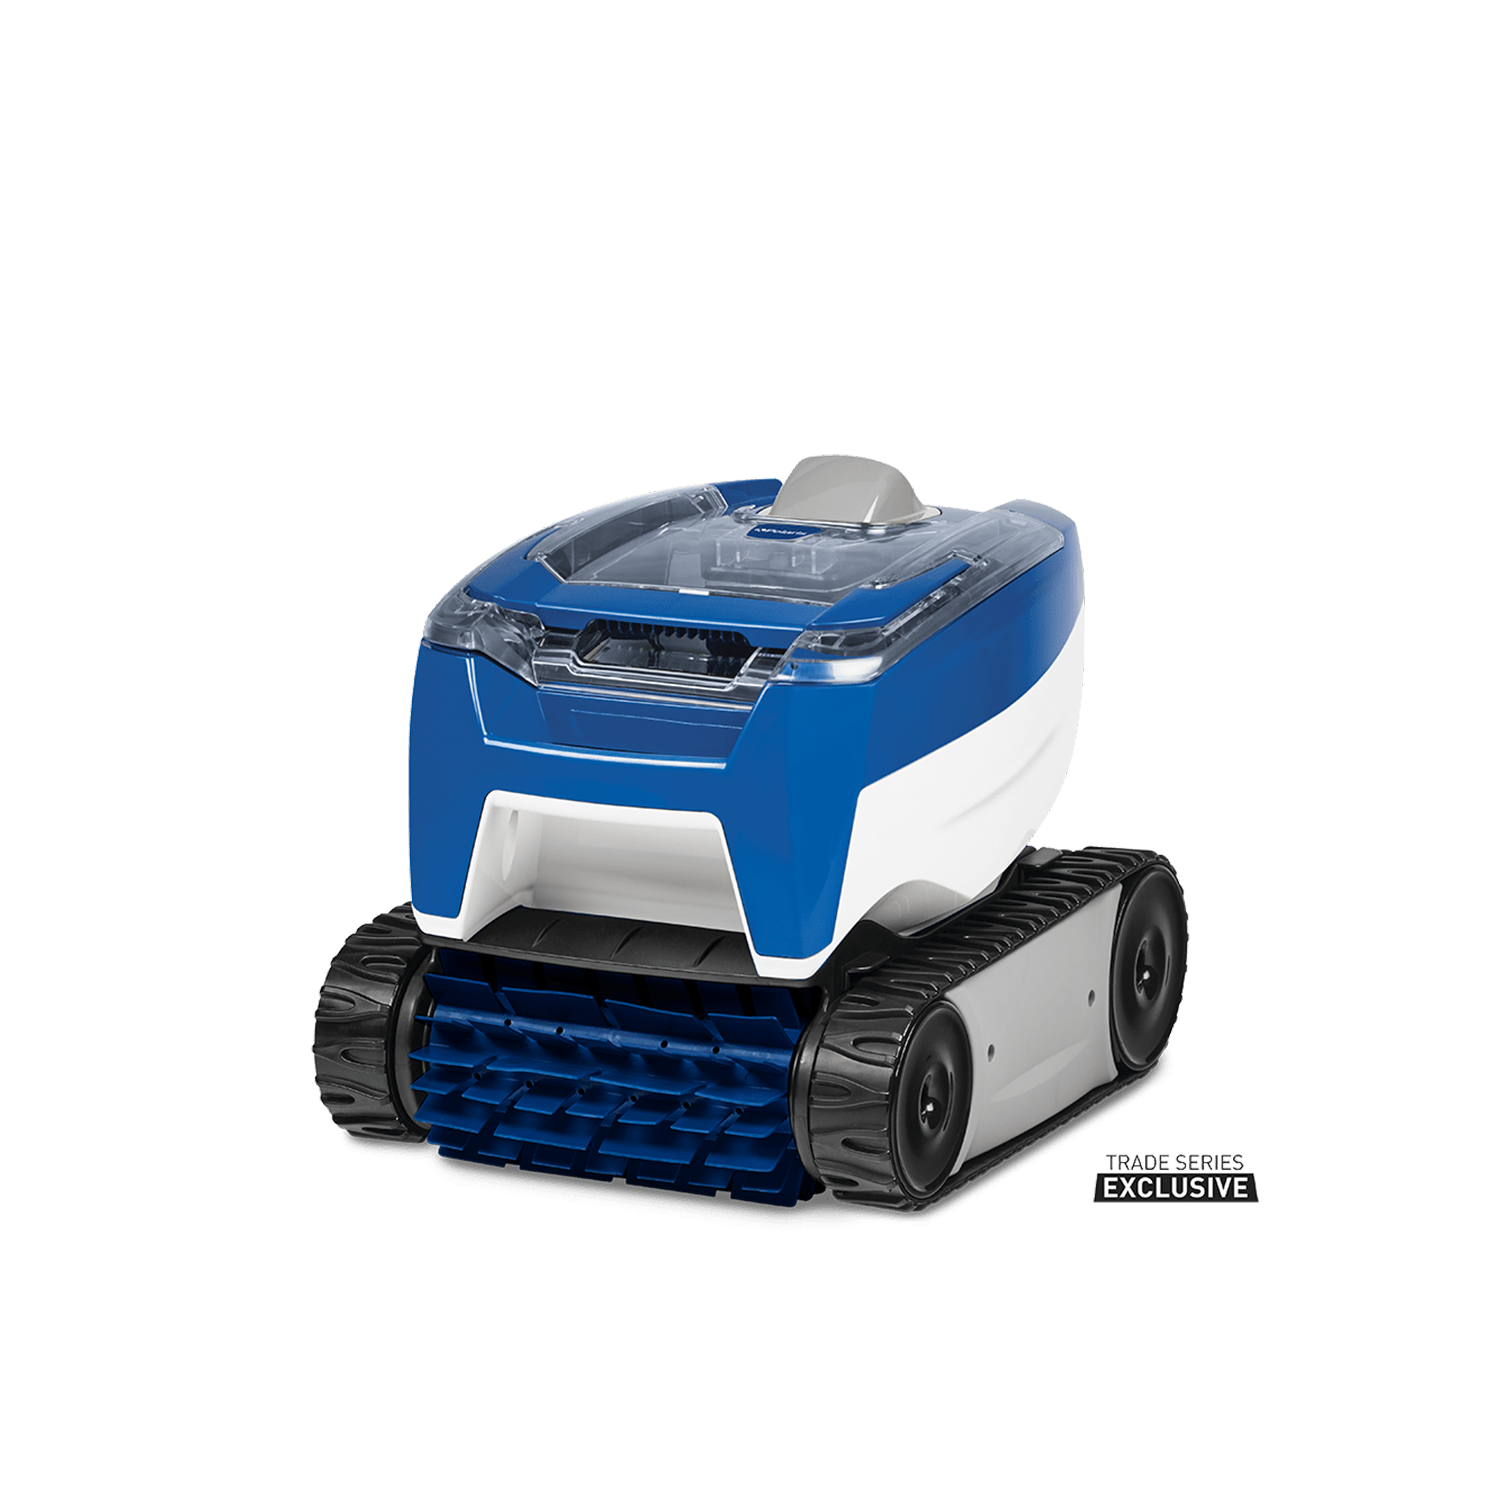 Polaris 7000 Robotic Cleaner Product Image